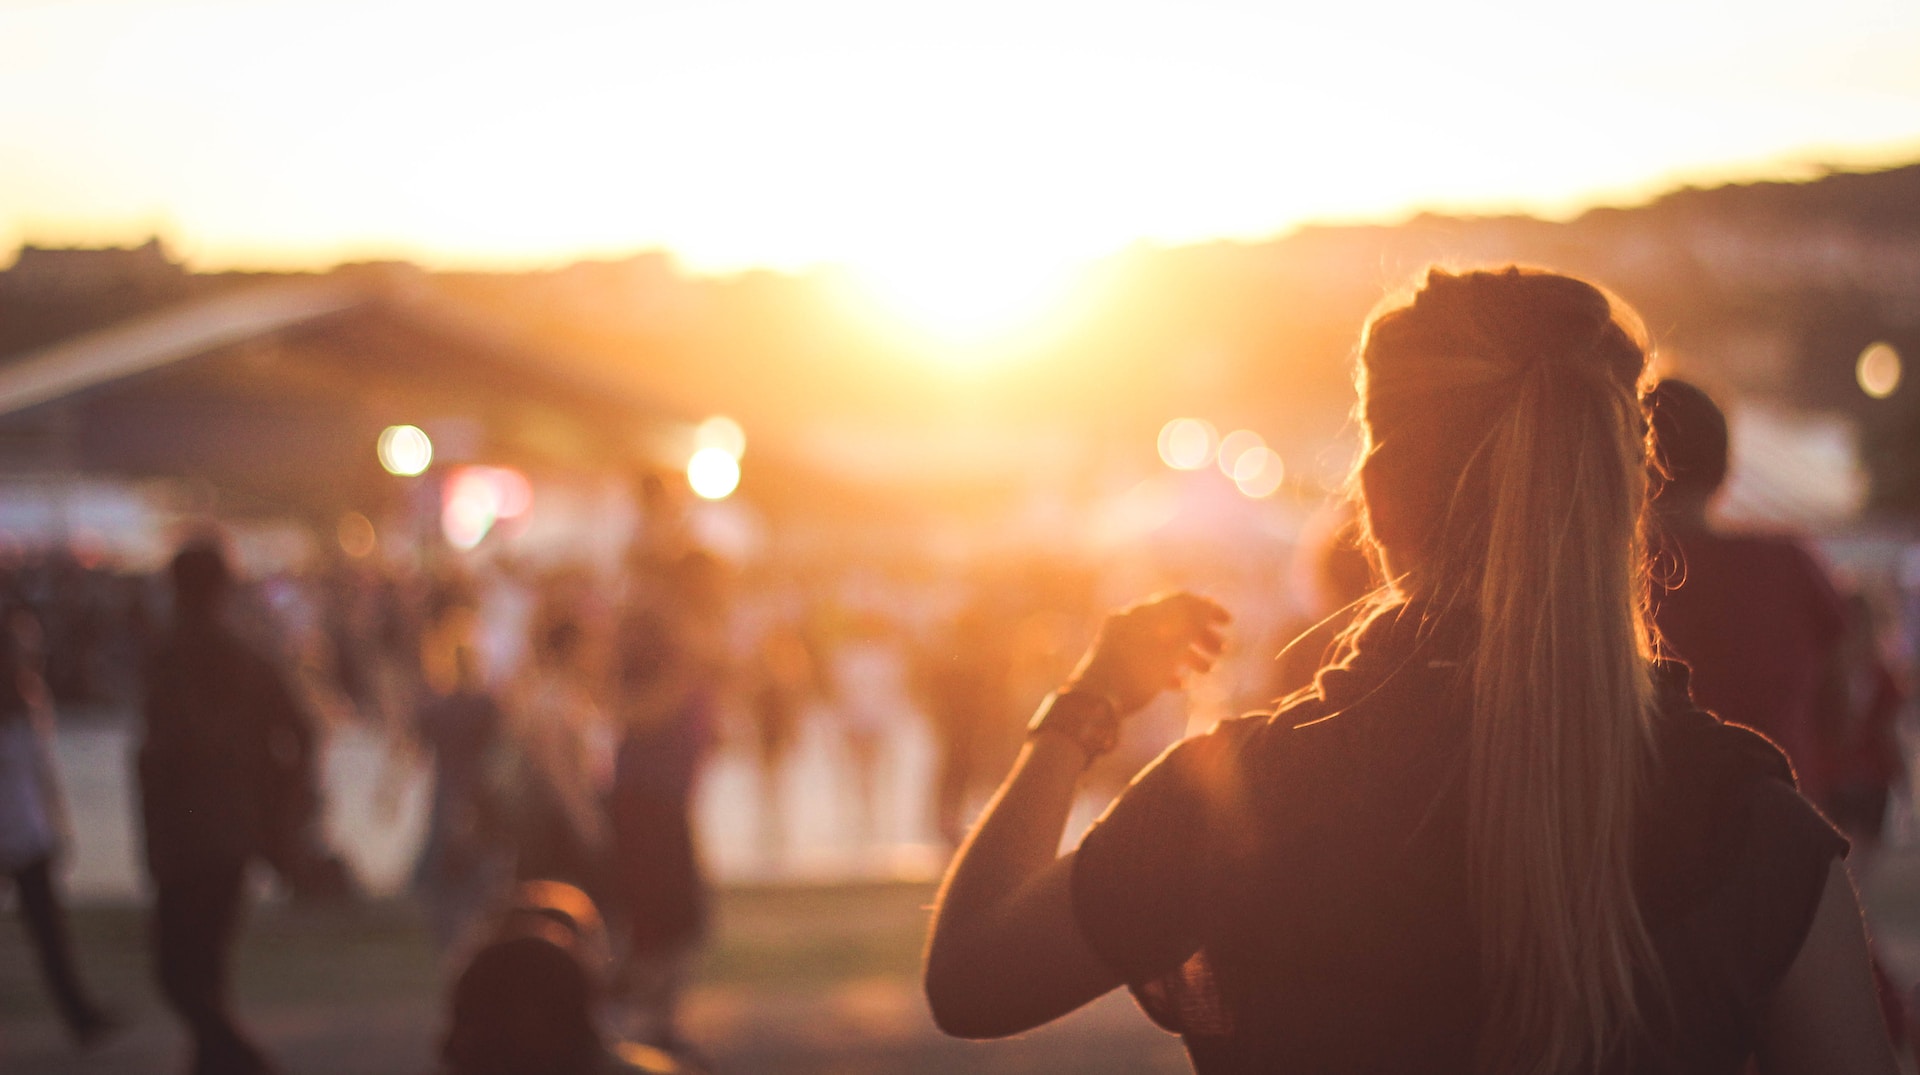 #Wochenvorfreude: Wir verlosen Tickets fürs Actionella-Festival und gehen wählen